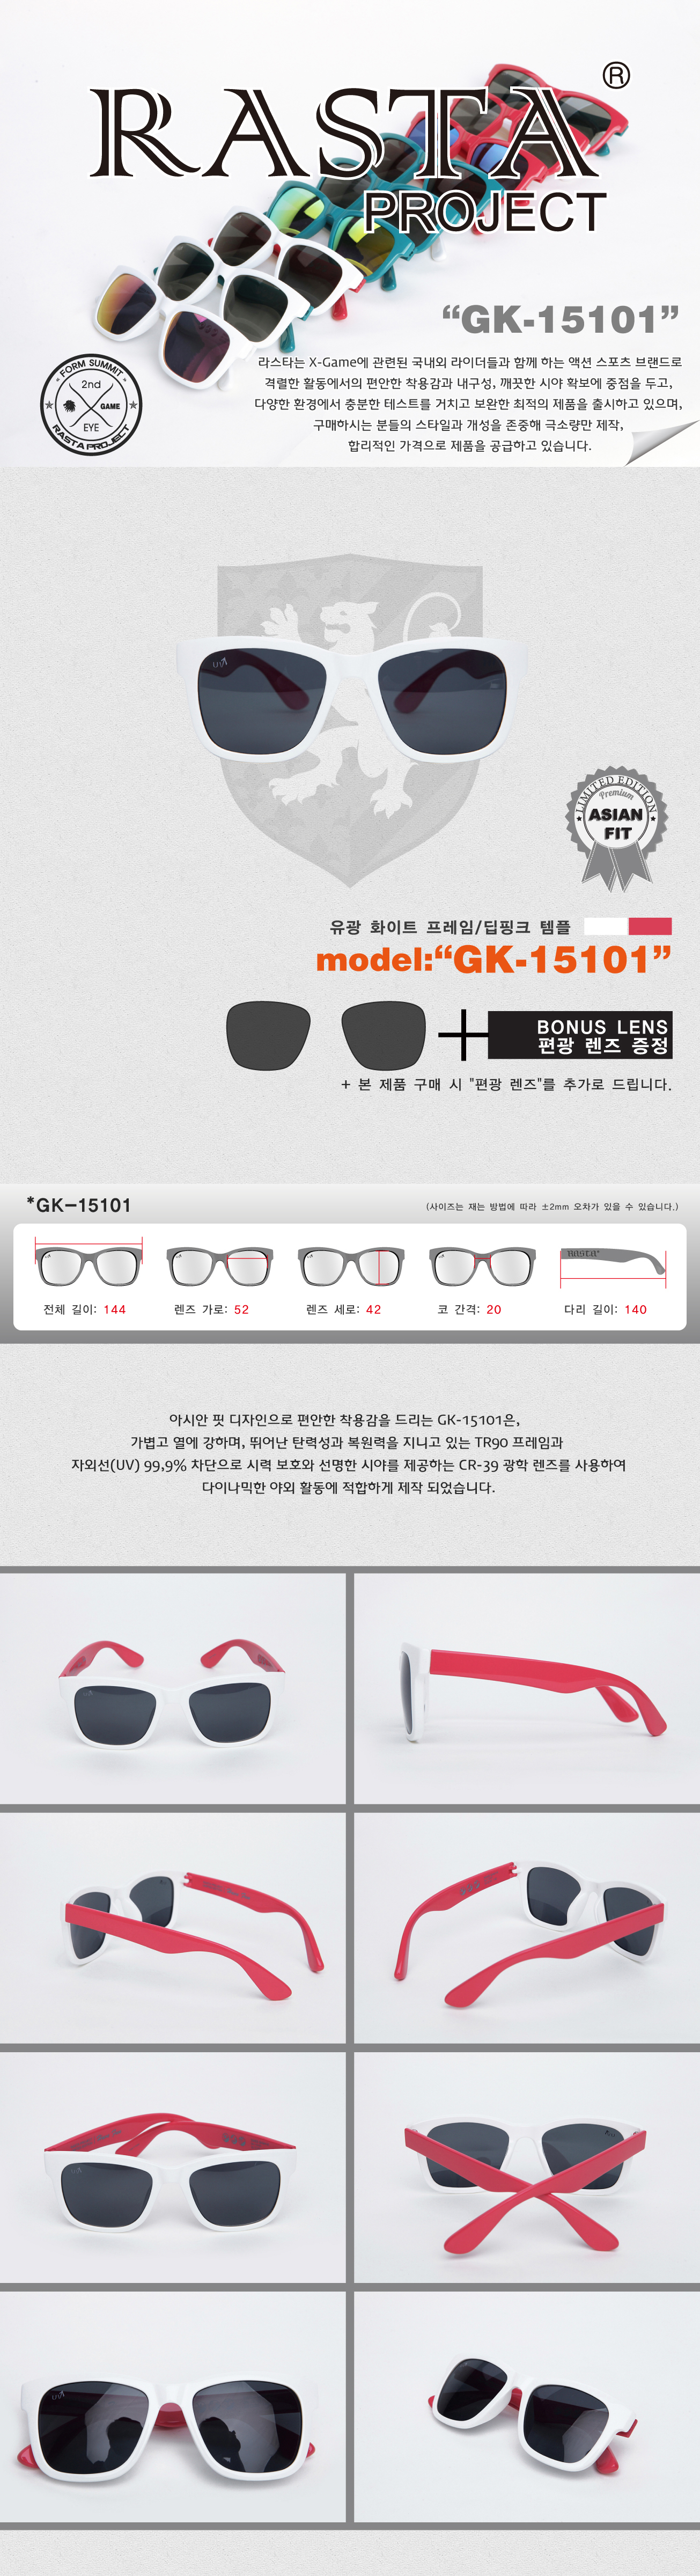 GK-15101 Gloss White/DeepPink